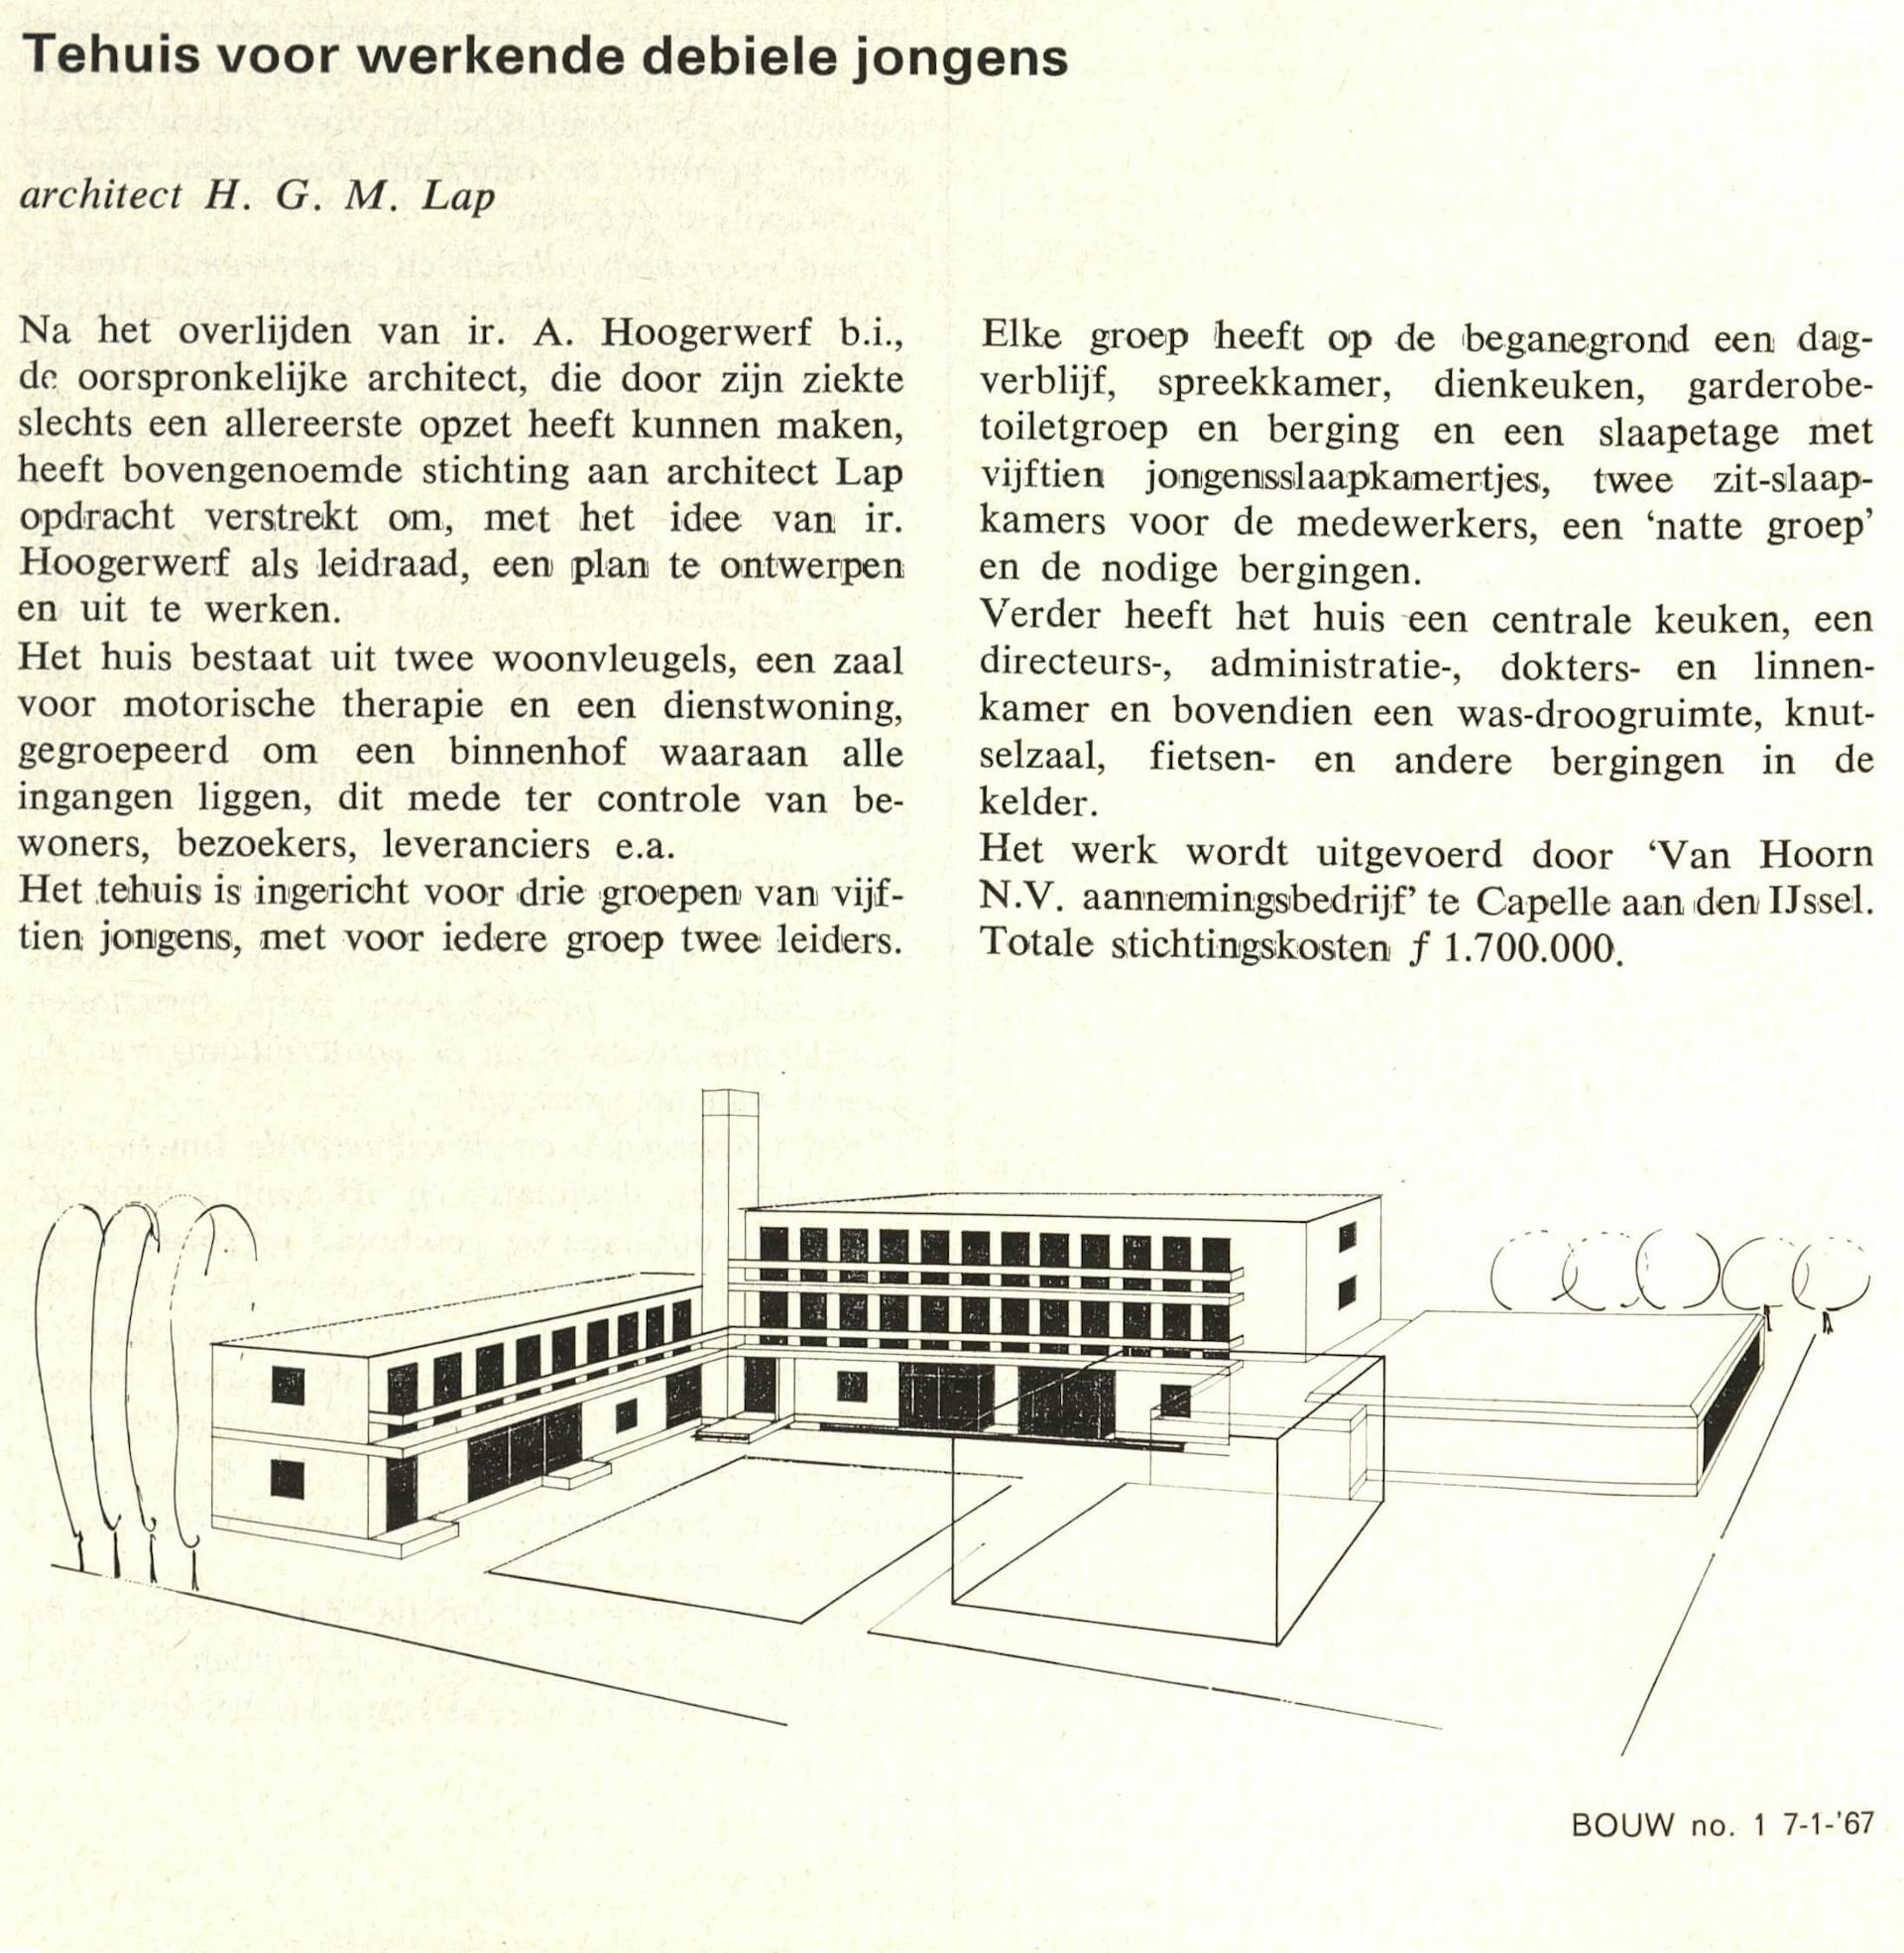 H.G.M. Lap. Tehuis voor werkende debiele jongens. In: Bouw, 1967. 